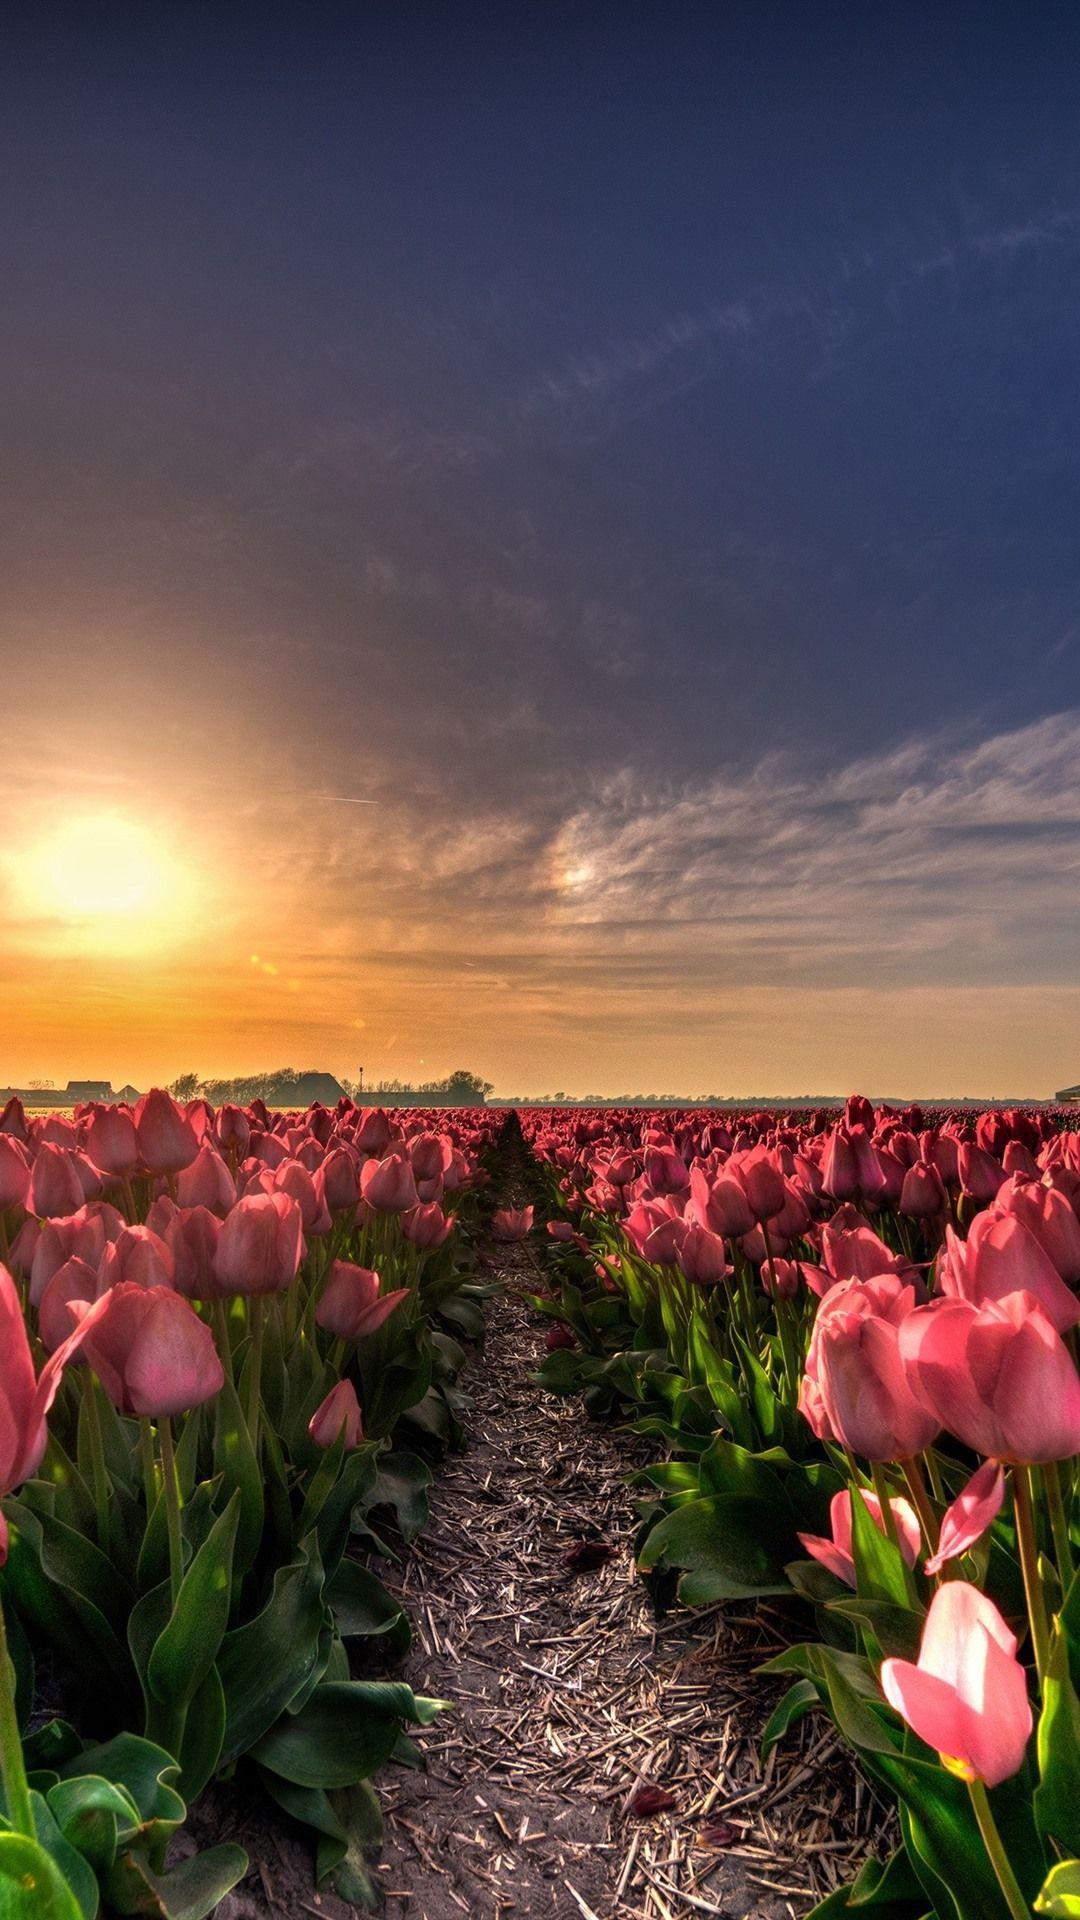 Mùa xuân là thời điểm đẹp nhất trong năm, và hoàng hôn mùa xuân càng làm tăng thêm sự tuyệt vời của khoảnh khắc đó. Nếu bạn cảm thấy bất ngờ trước vẻ đẹp mộc mạc của hoàng hôn mùa xuân, hãy xem hình nền hoa tulip qua bức ảnh tuyệt đẹp này. Sự kết hợp tuyệt vời của phong cảnh và hoa tulip sẽ khiến bạn cảm thấy như đang được đắm chìm trong thiên nhiên hoang sơ.